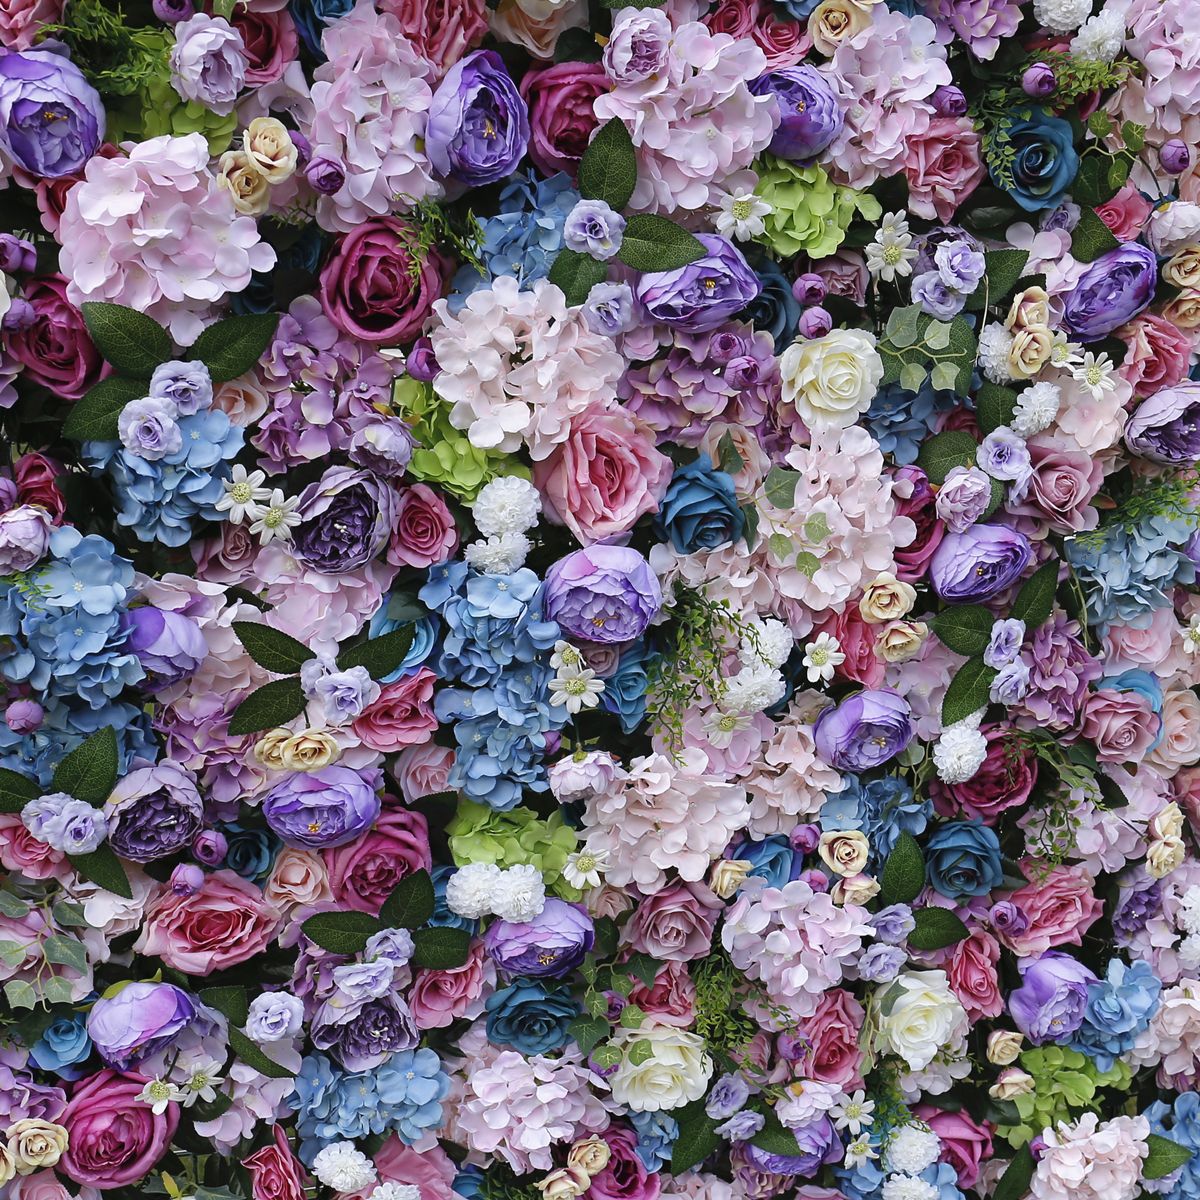 Simulierte Blumenwand mit Stoffboden, Hintergrundwand, Hochzeitsdekoration, Innendekoration und simulierten Blumen